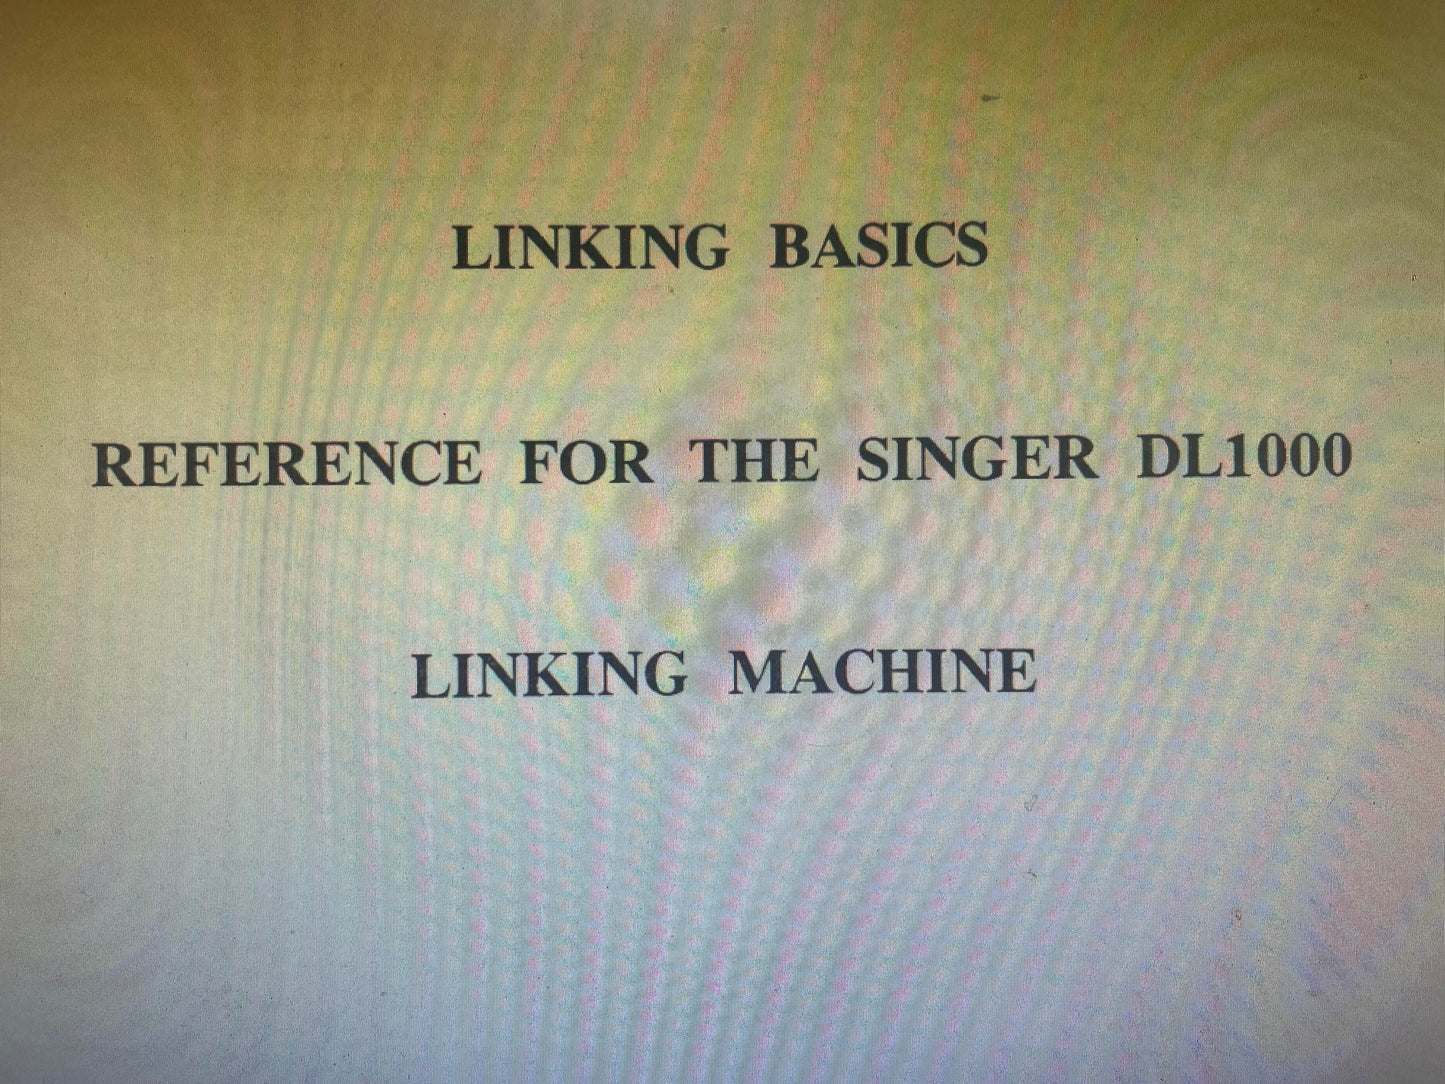 Linking Basics for DL1000 Linker